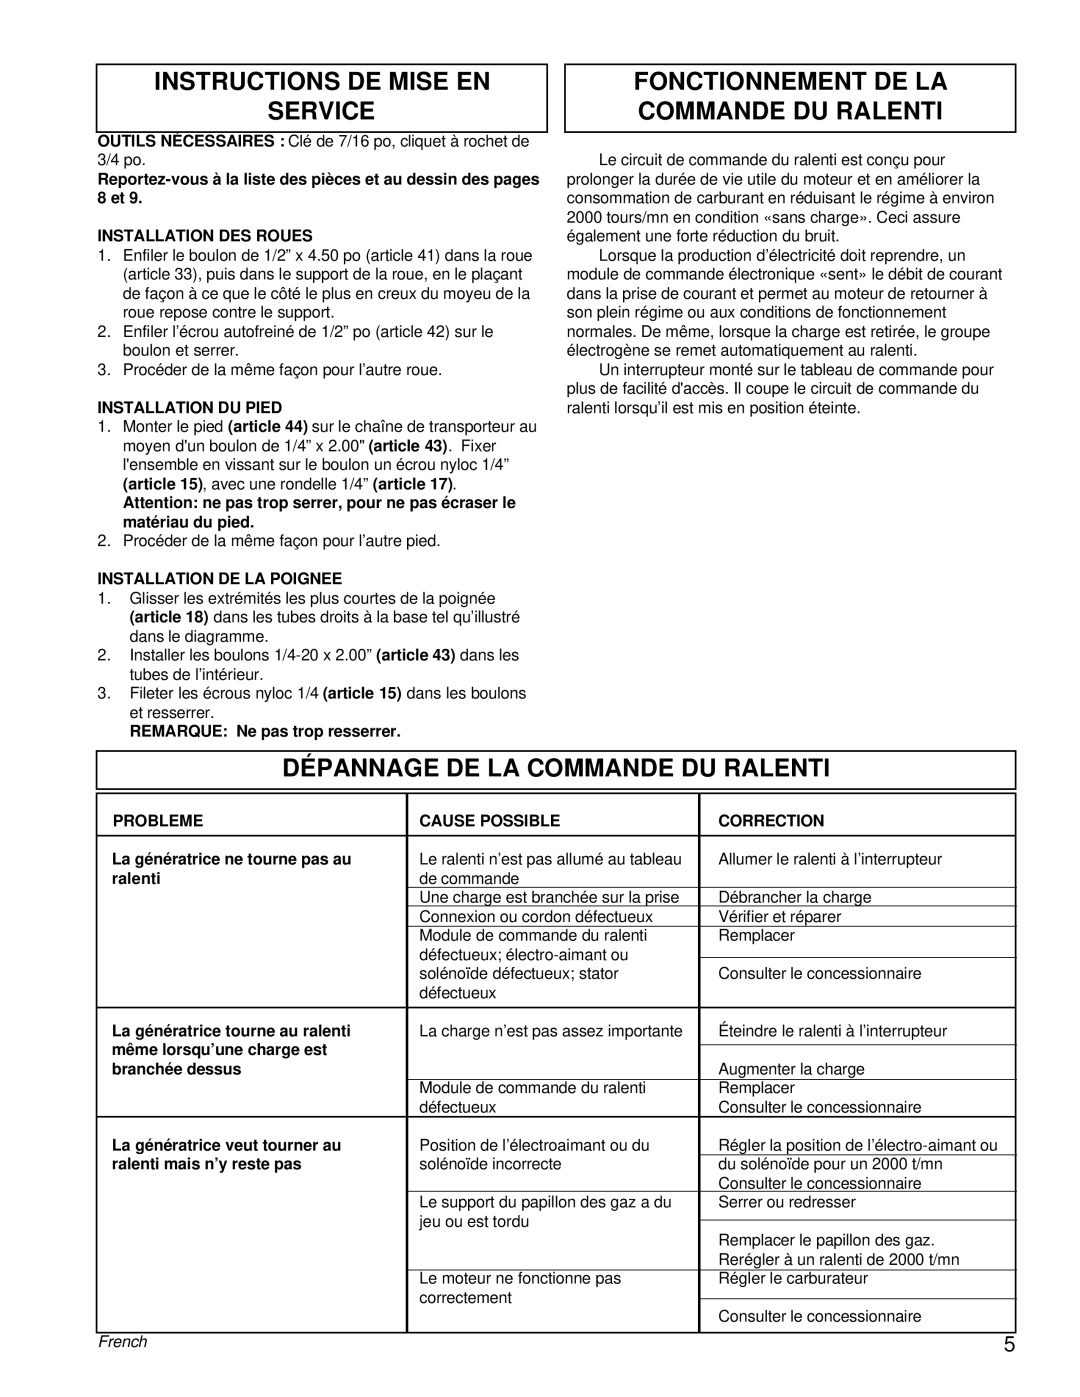 Powermate PM0463300 manual Instructions De Mise En Service, Fonctionnement De La Commande Du Ralenti, French 